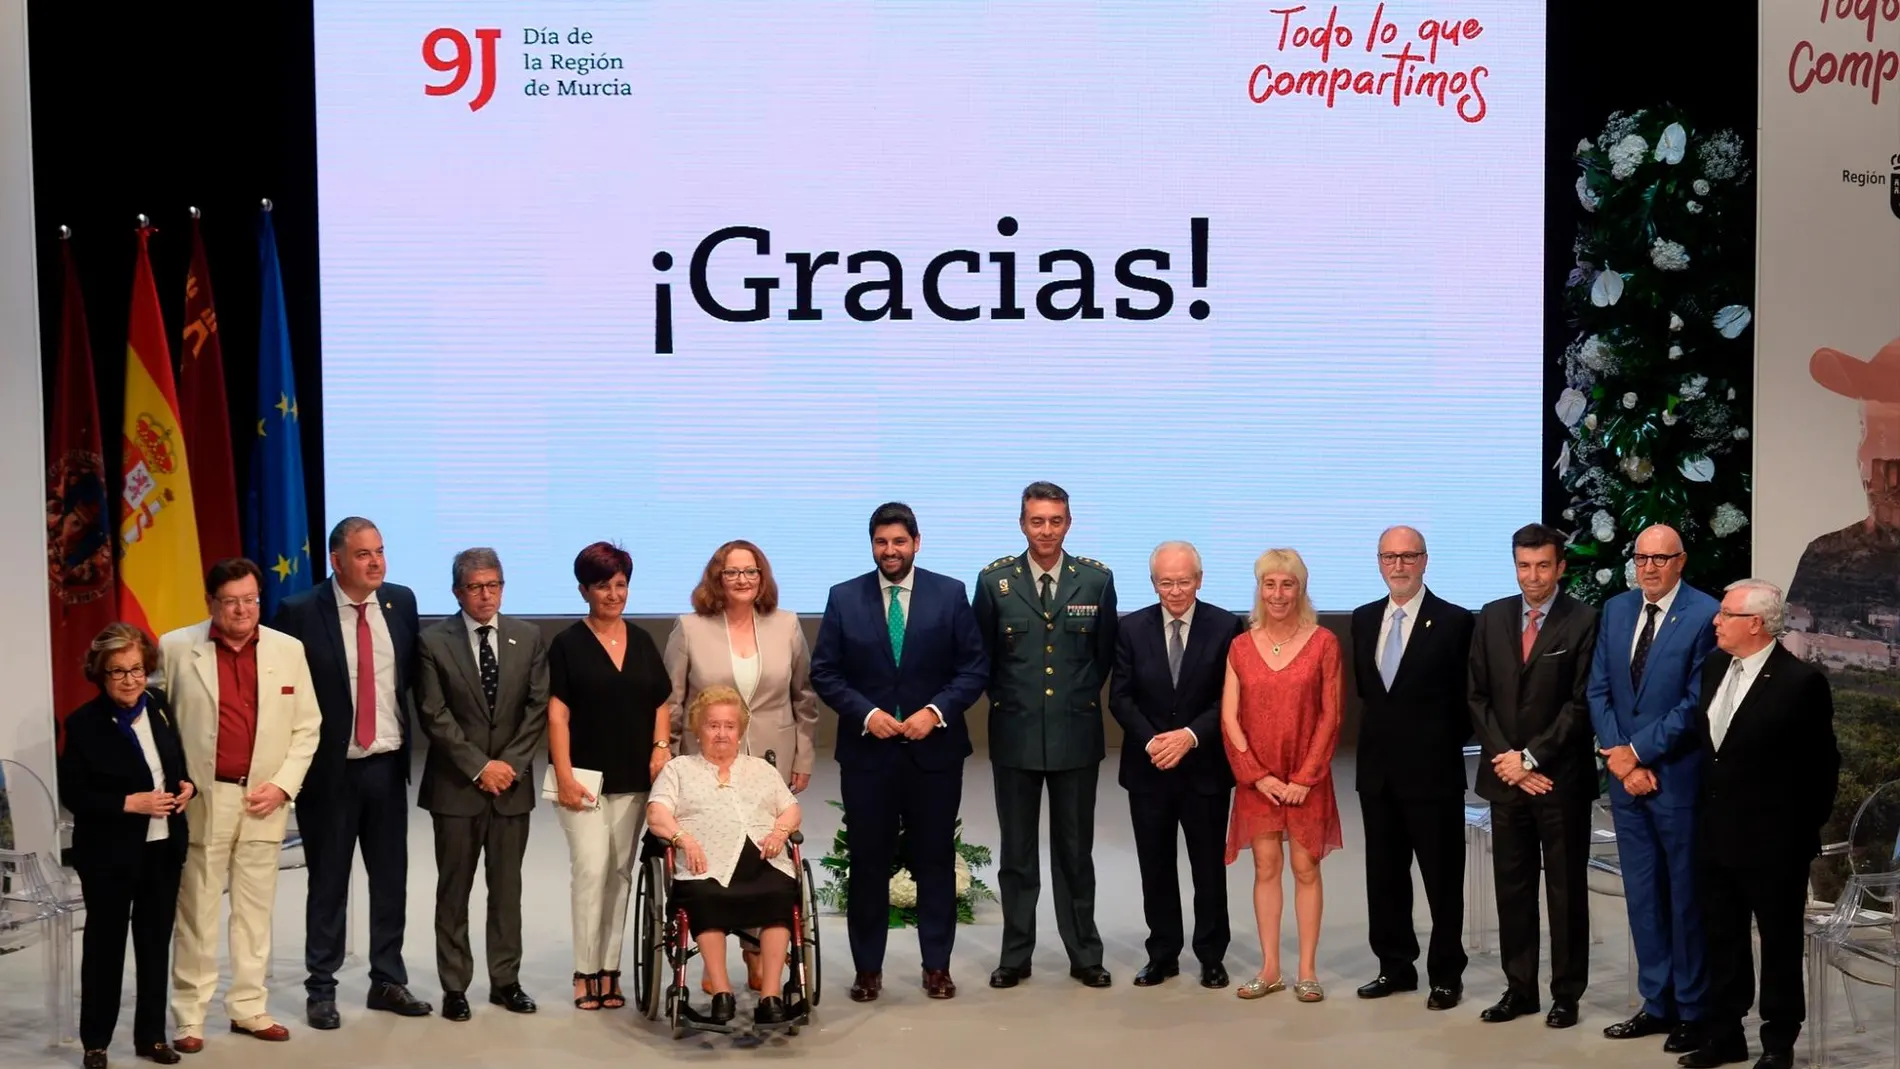 Los premiados con motivo del Día de la Región junto al presidente del Ejecutivo regional en funciones, Fernando López Miras. LA RAZÓN